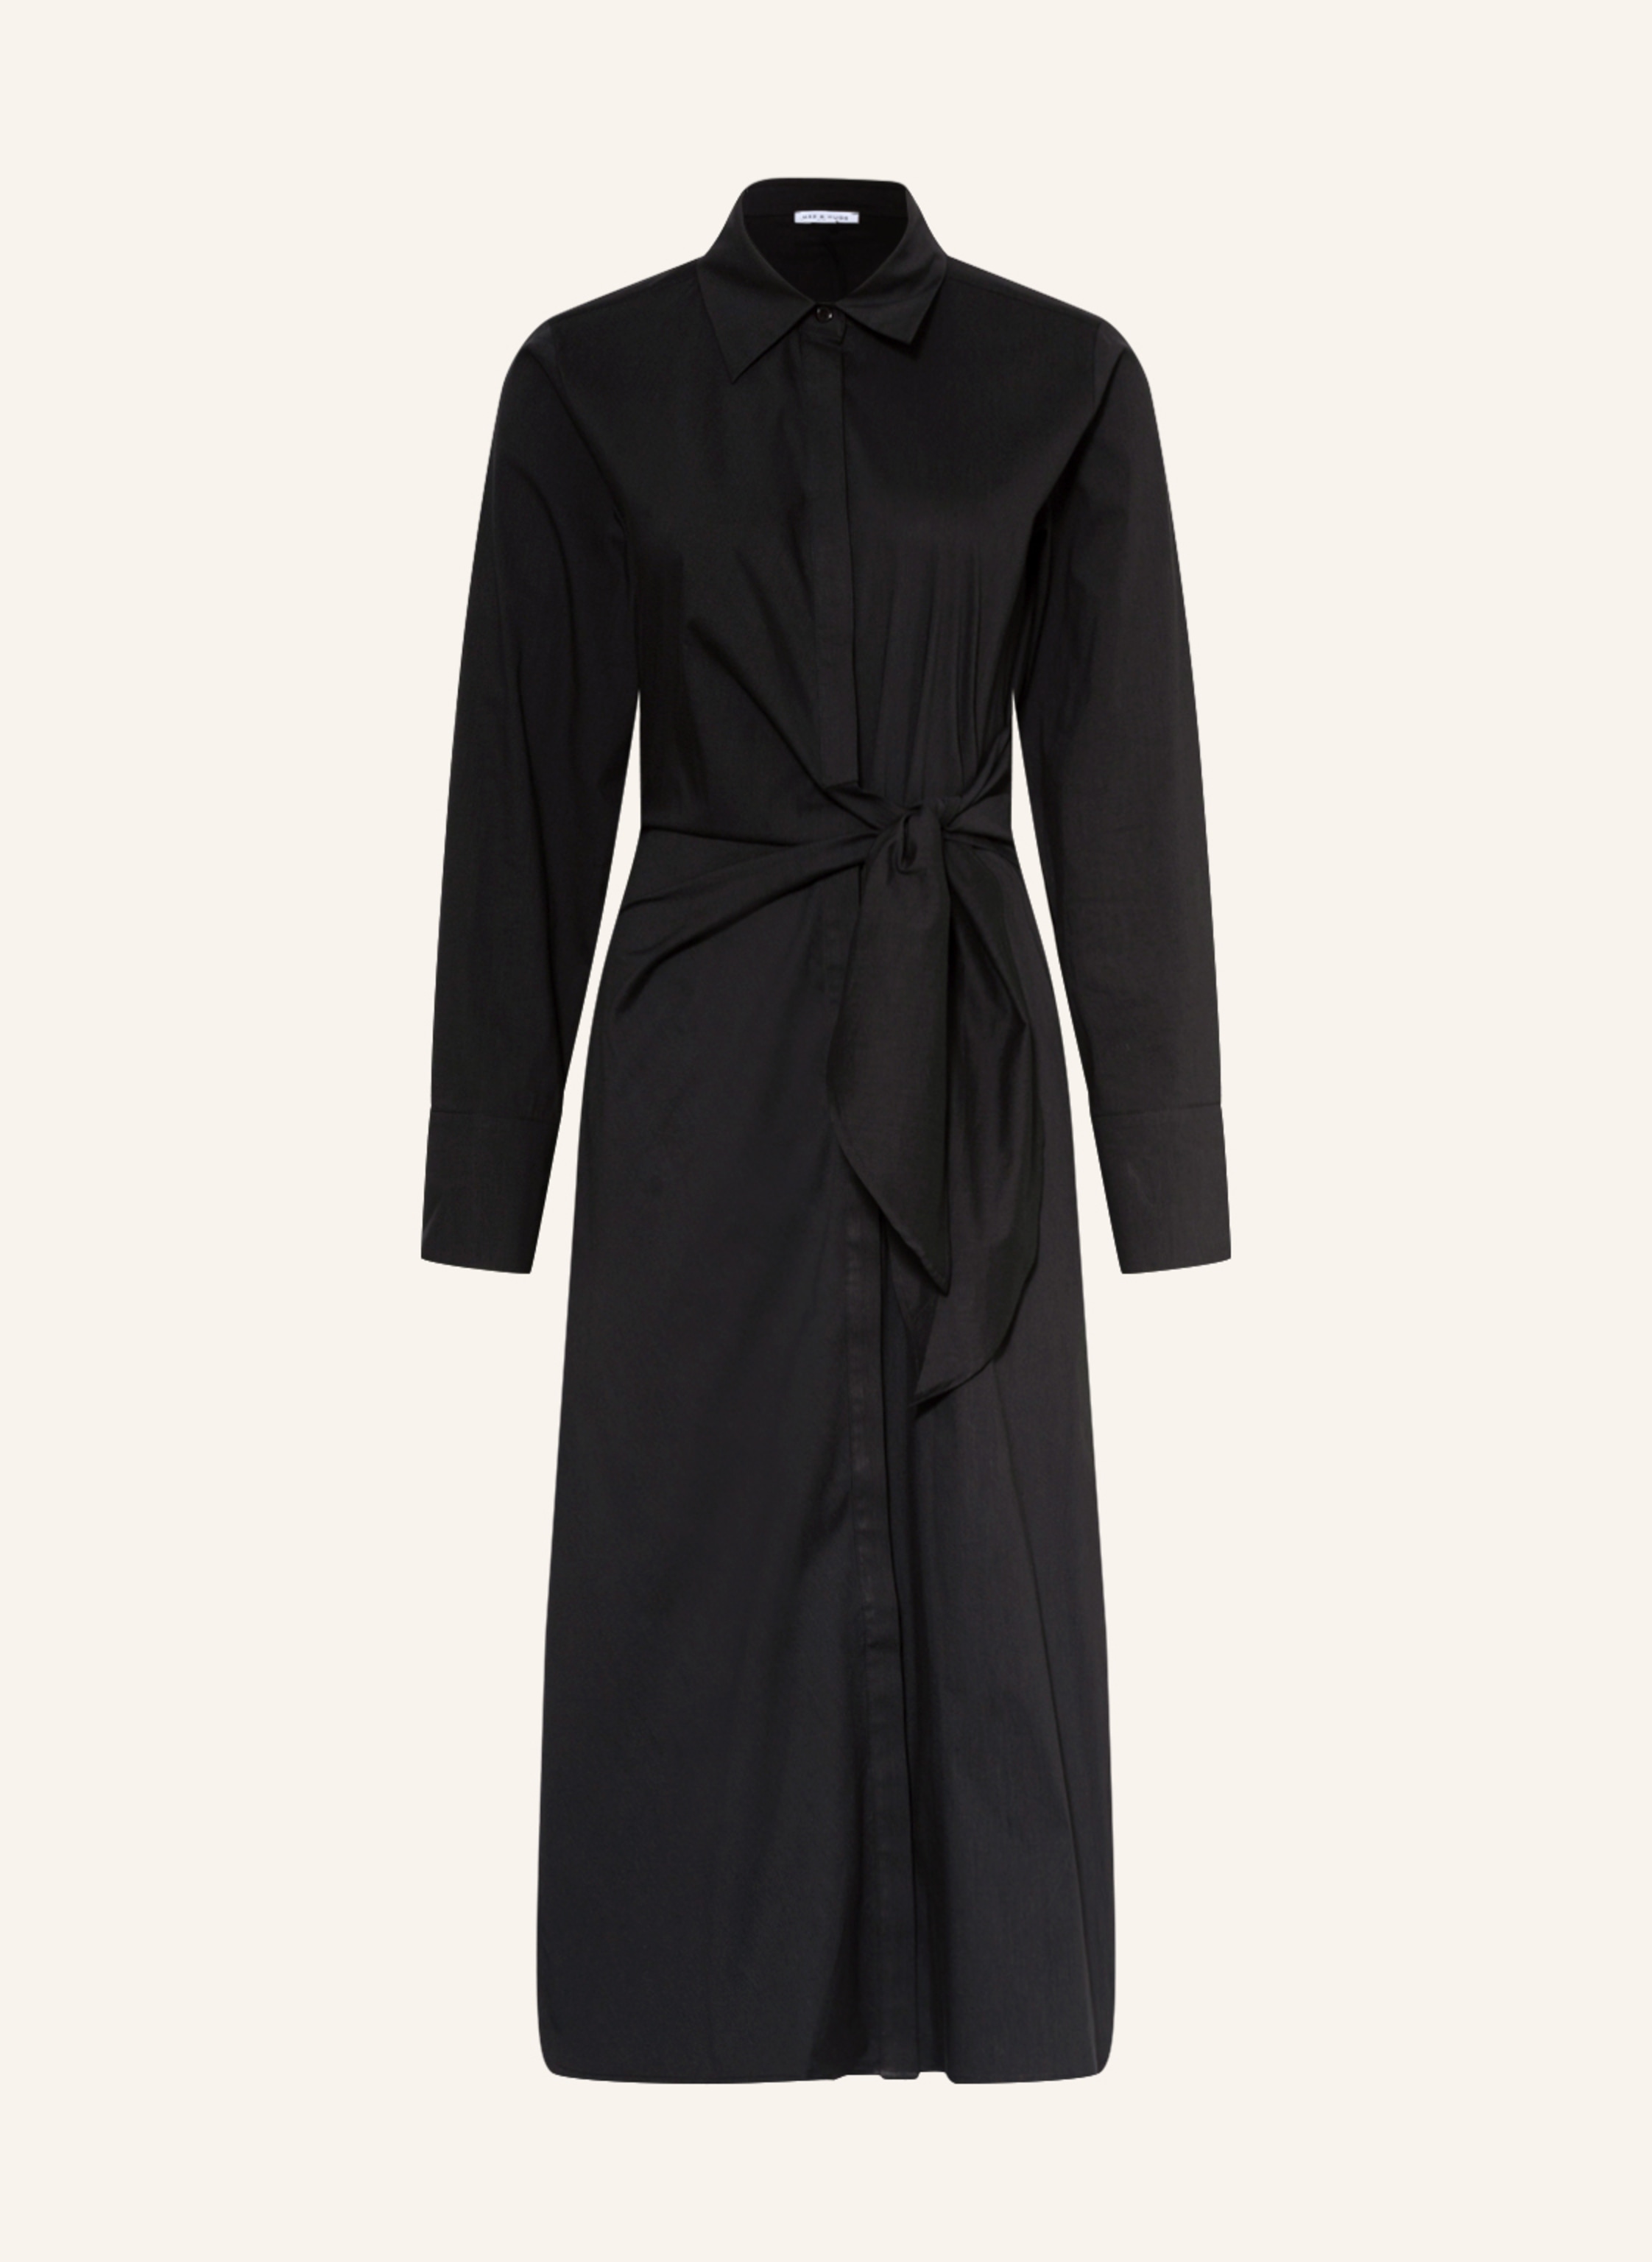 MRS & HUGS Shirt dress in black | Breuninger